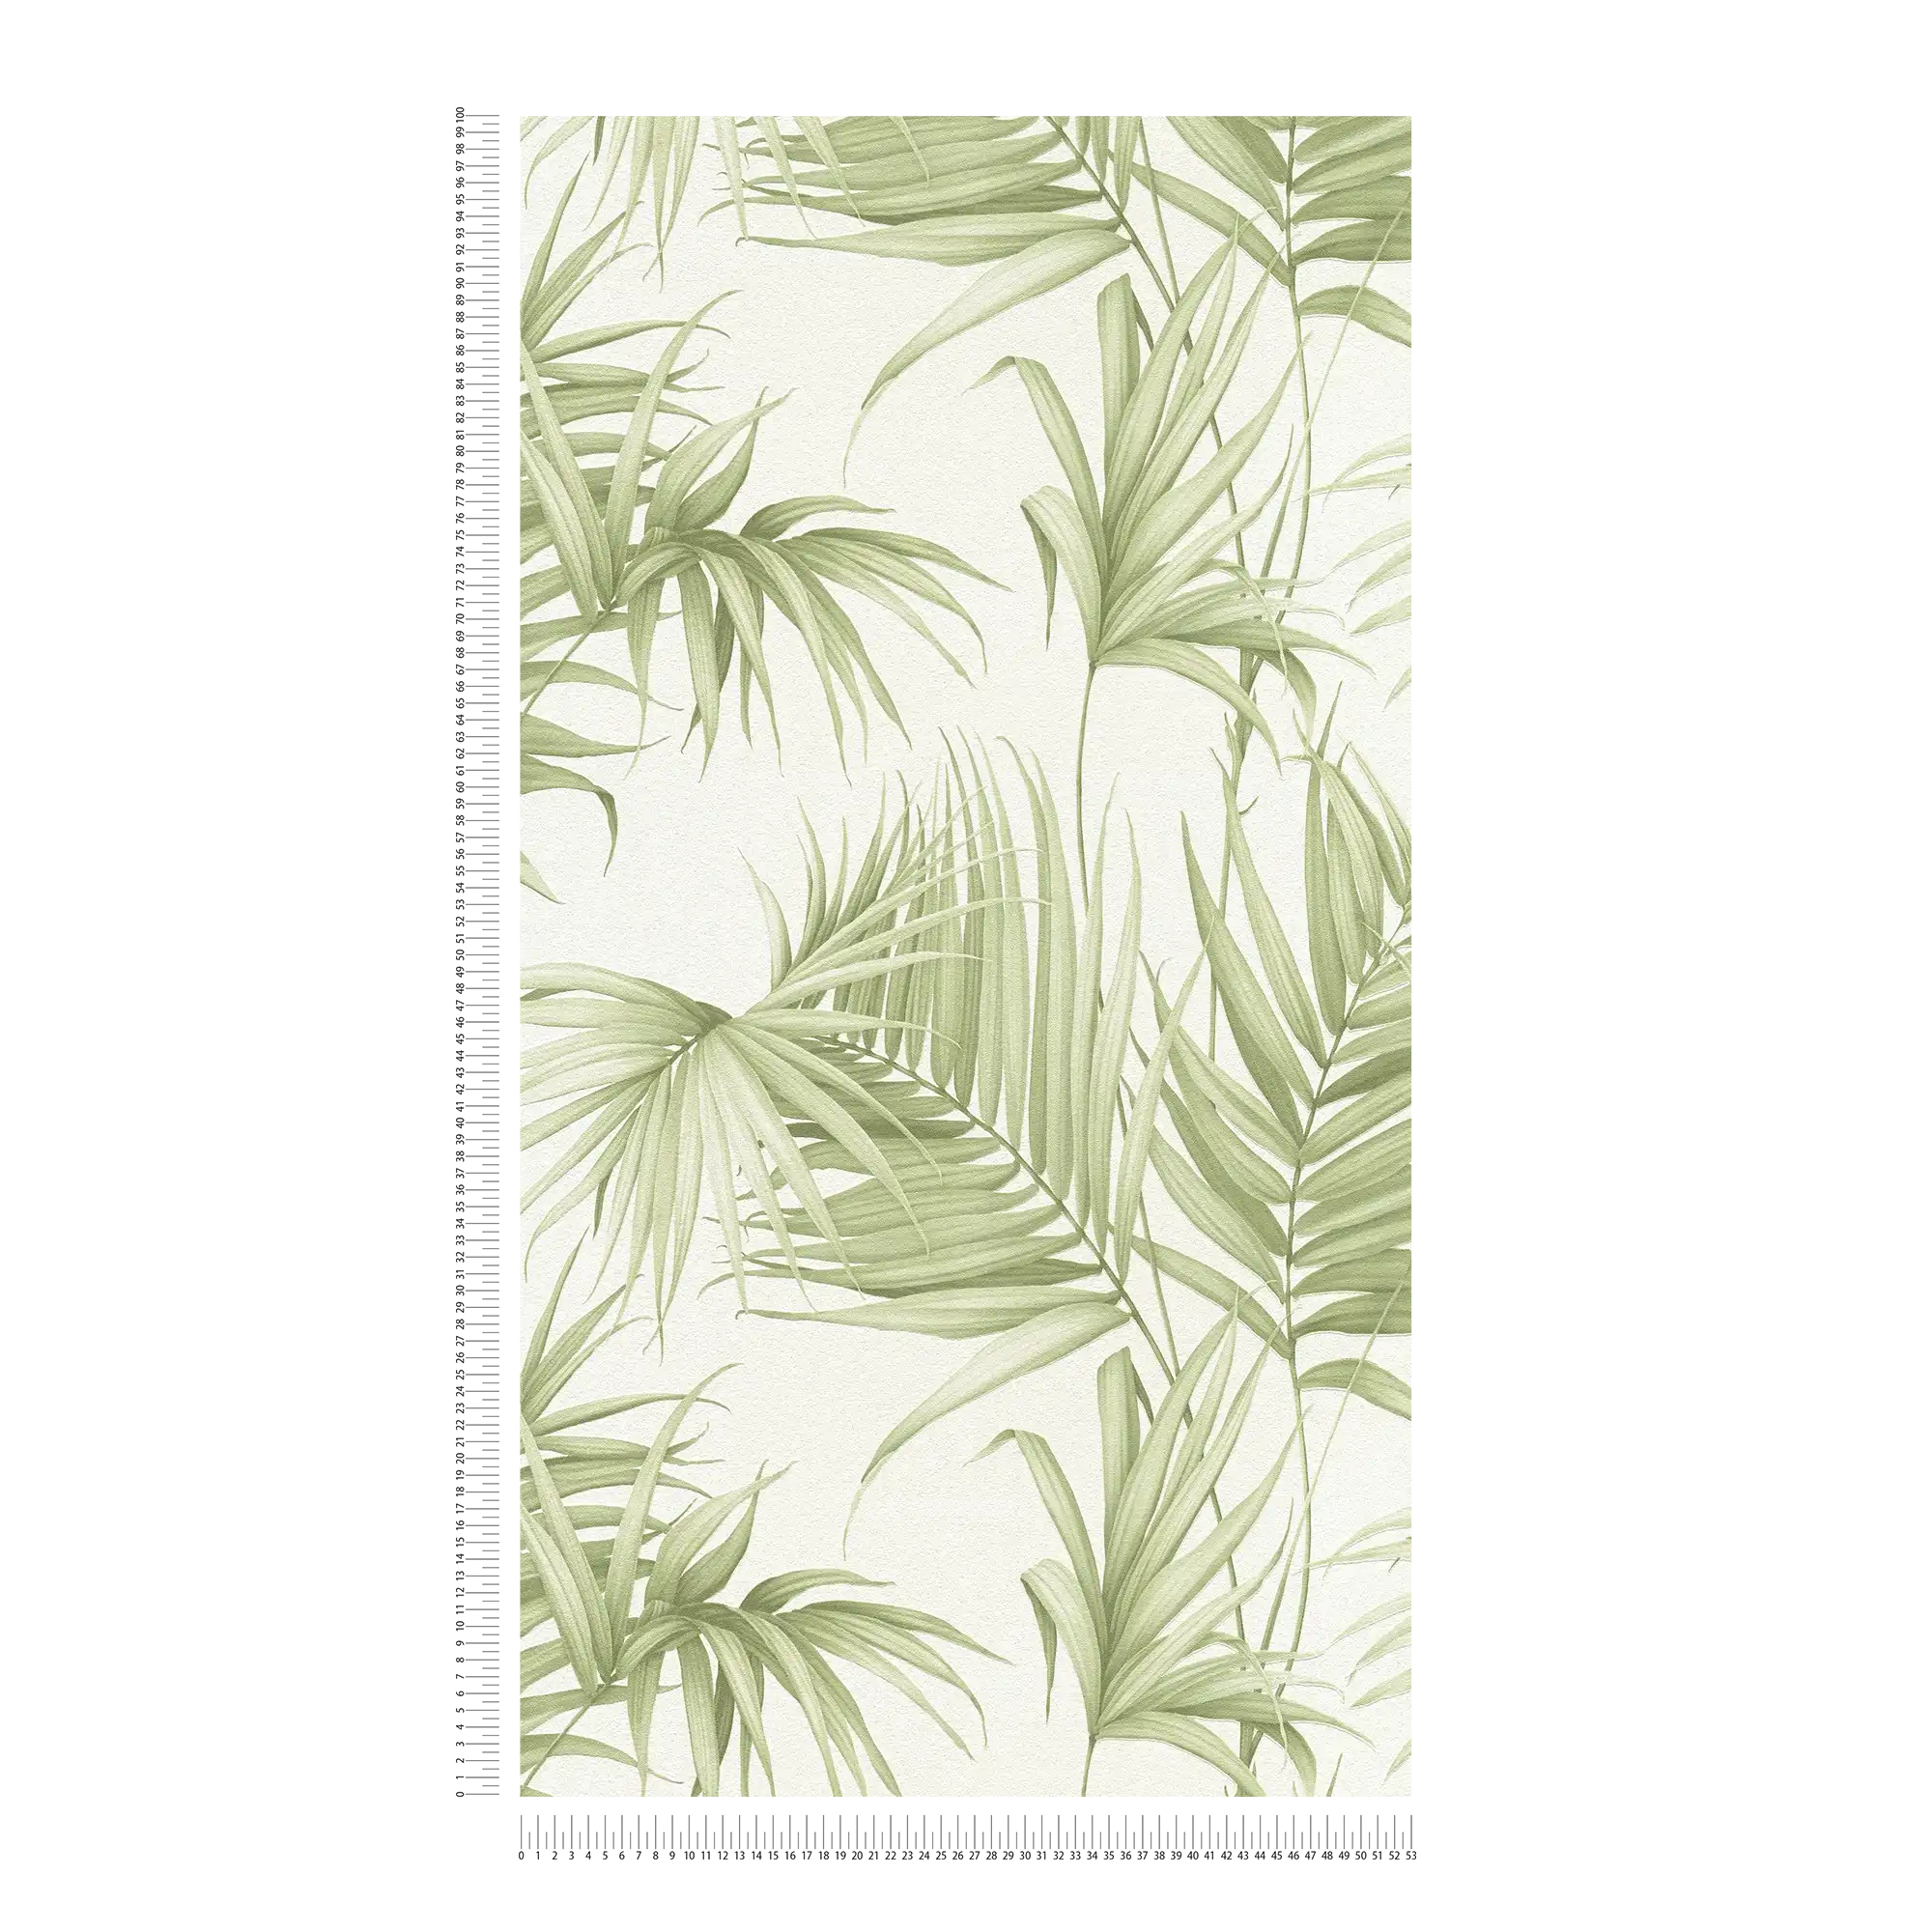             Feuilles papier peint avec des feuilles de fougères exotiques - vert, blanc
        